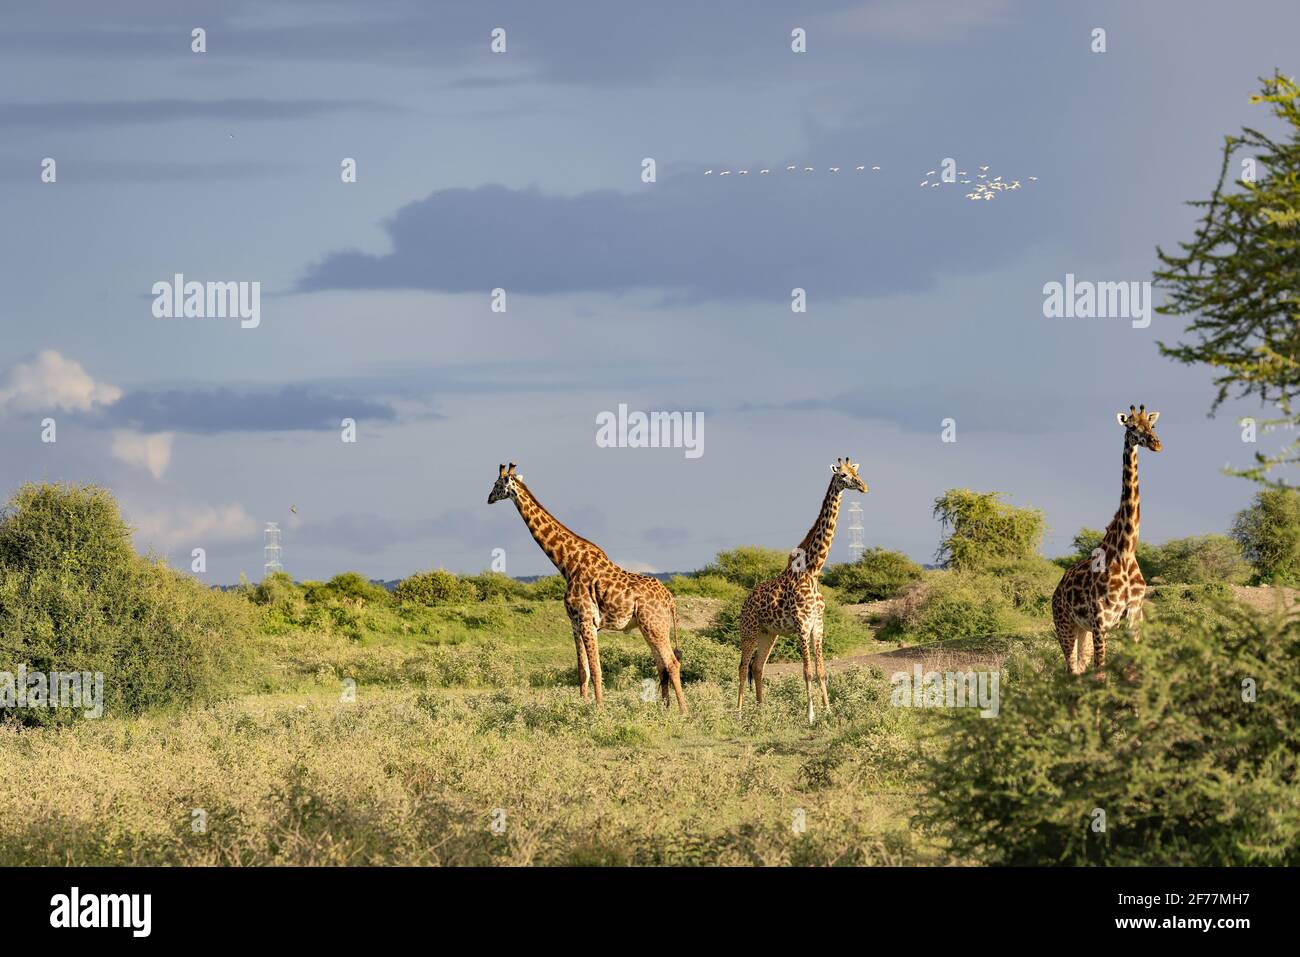 Tanzania, Manyara Ranch, regione di Arusha, incontriamo molte giraffe nella pianura del Manyara Ranch, Manyara Conservancy (150 KM2) è un progetto pionieristico che unisce la protezione della fauna selvatica e la gestione sostenibile del turismo a beneficio delle comunità locali Foto Stock